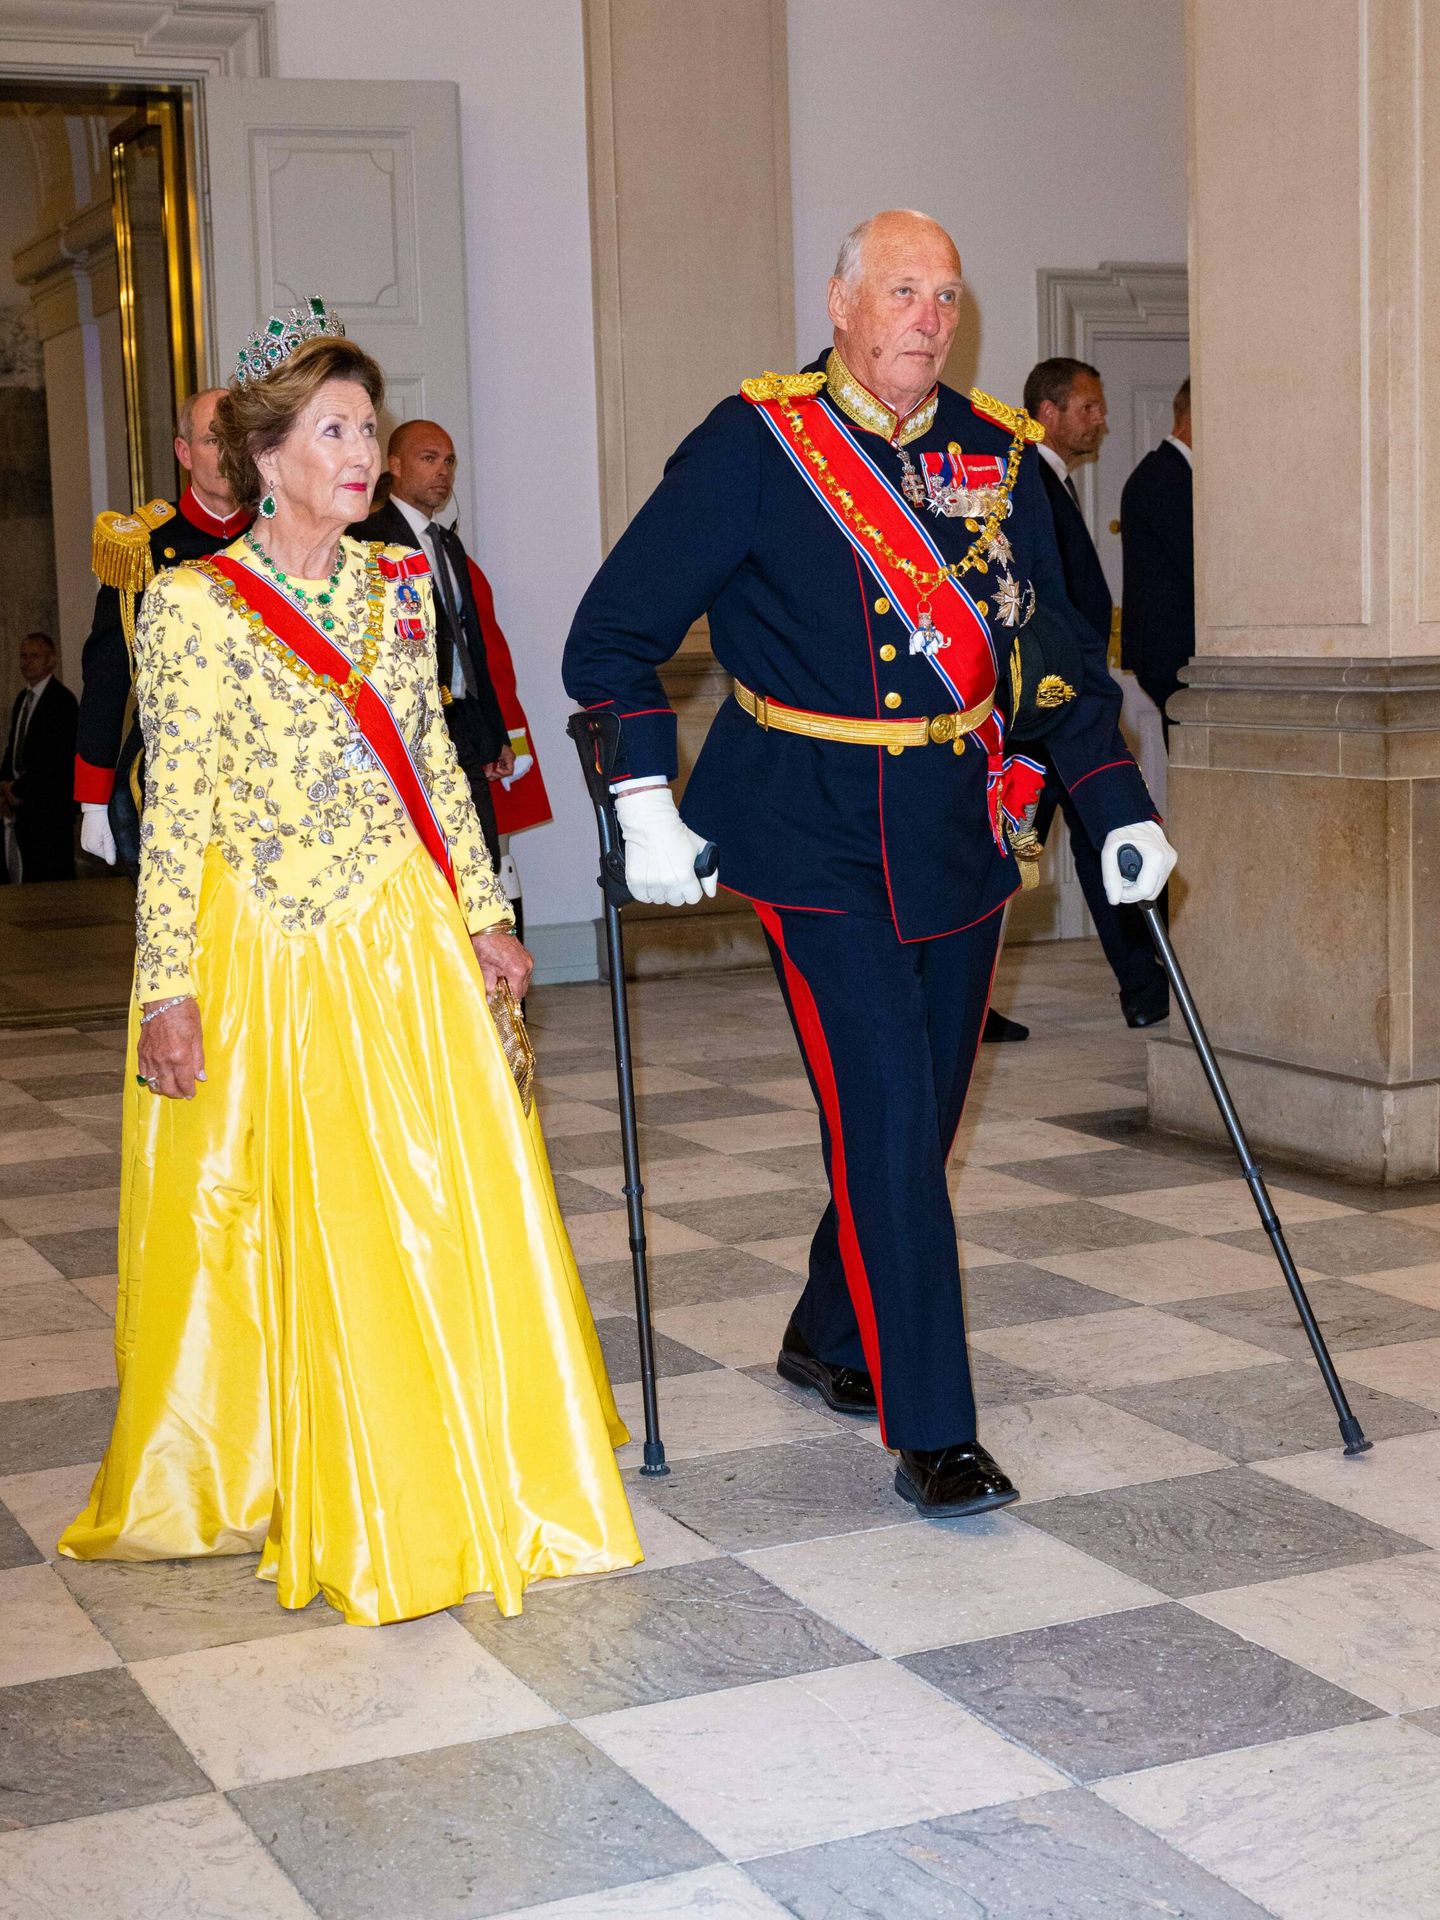 La reina Sonia y el rey Harald de Noruega, en la cena por el jubileo de Margarita de Dinamarca. (Cordon Press)